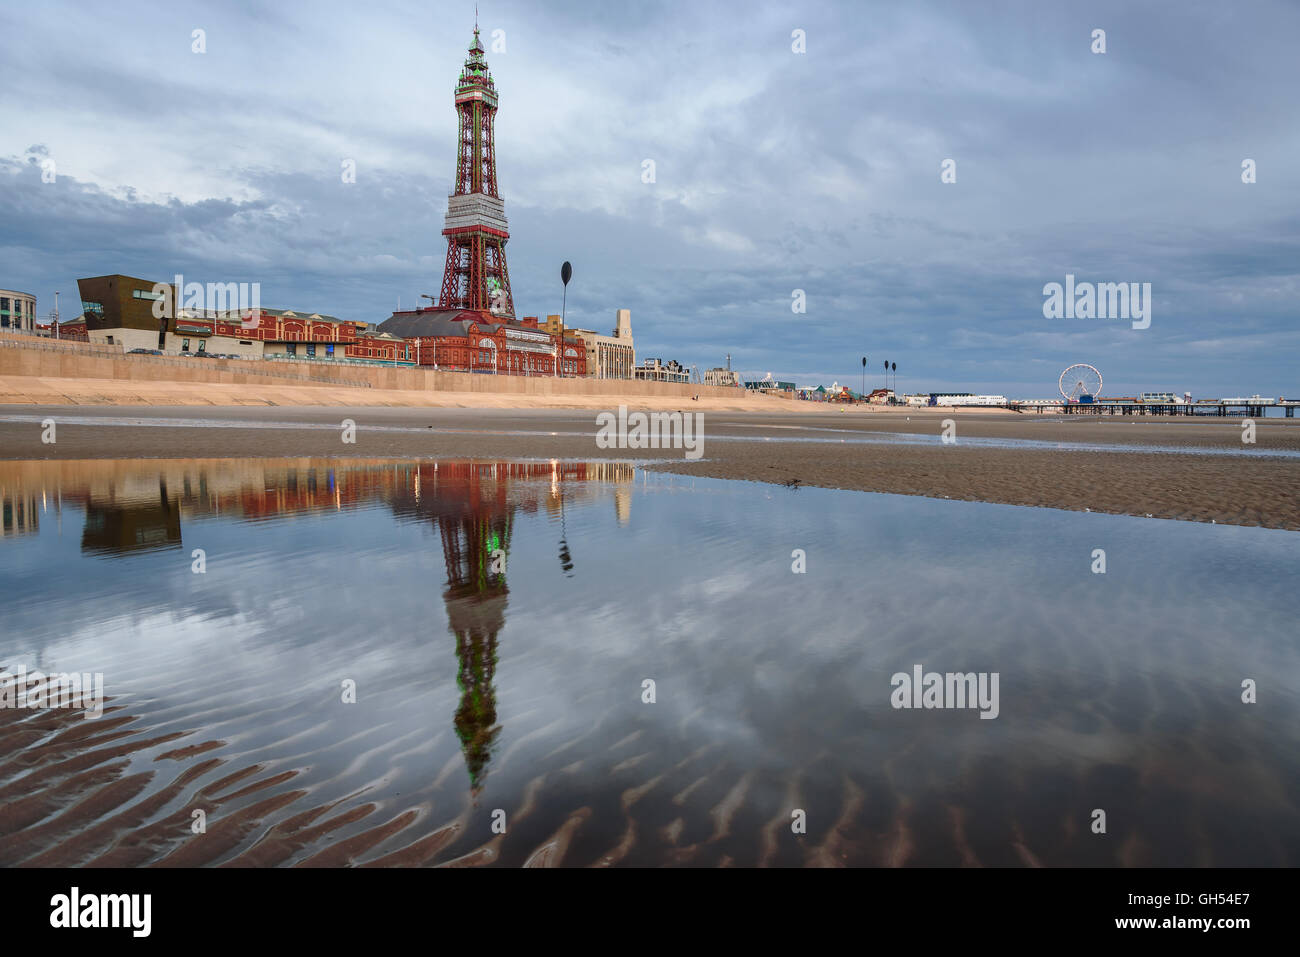 La riflessione della torre di Blackpool nello stagno di acqua sulla spiaggia. Foto Stock